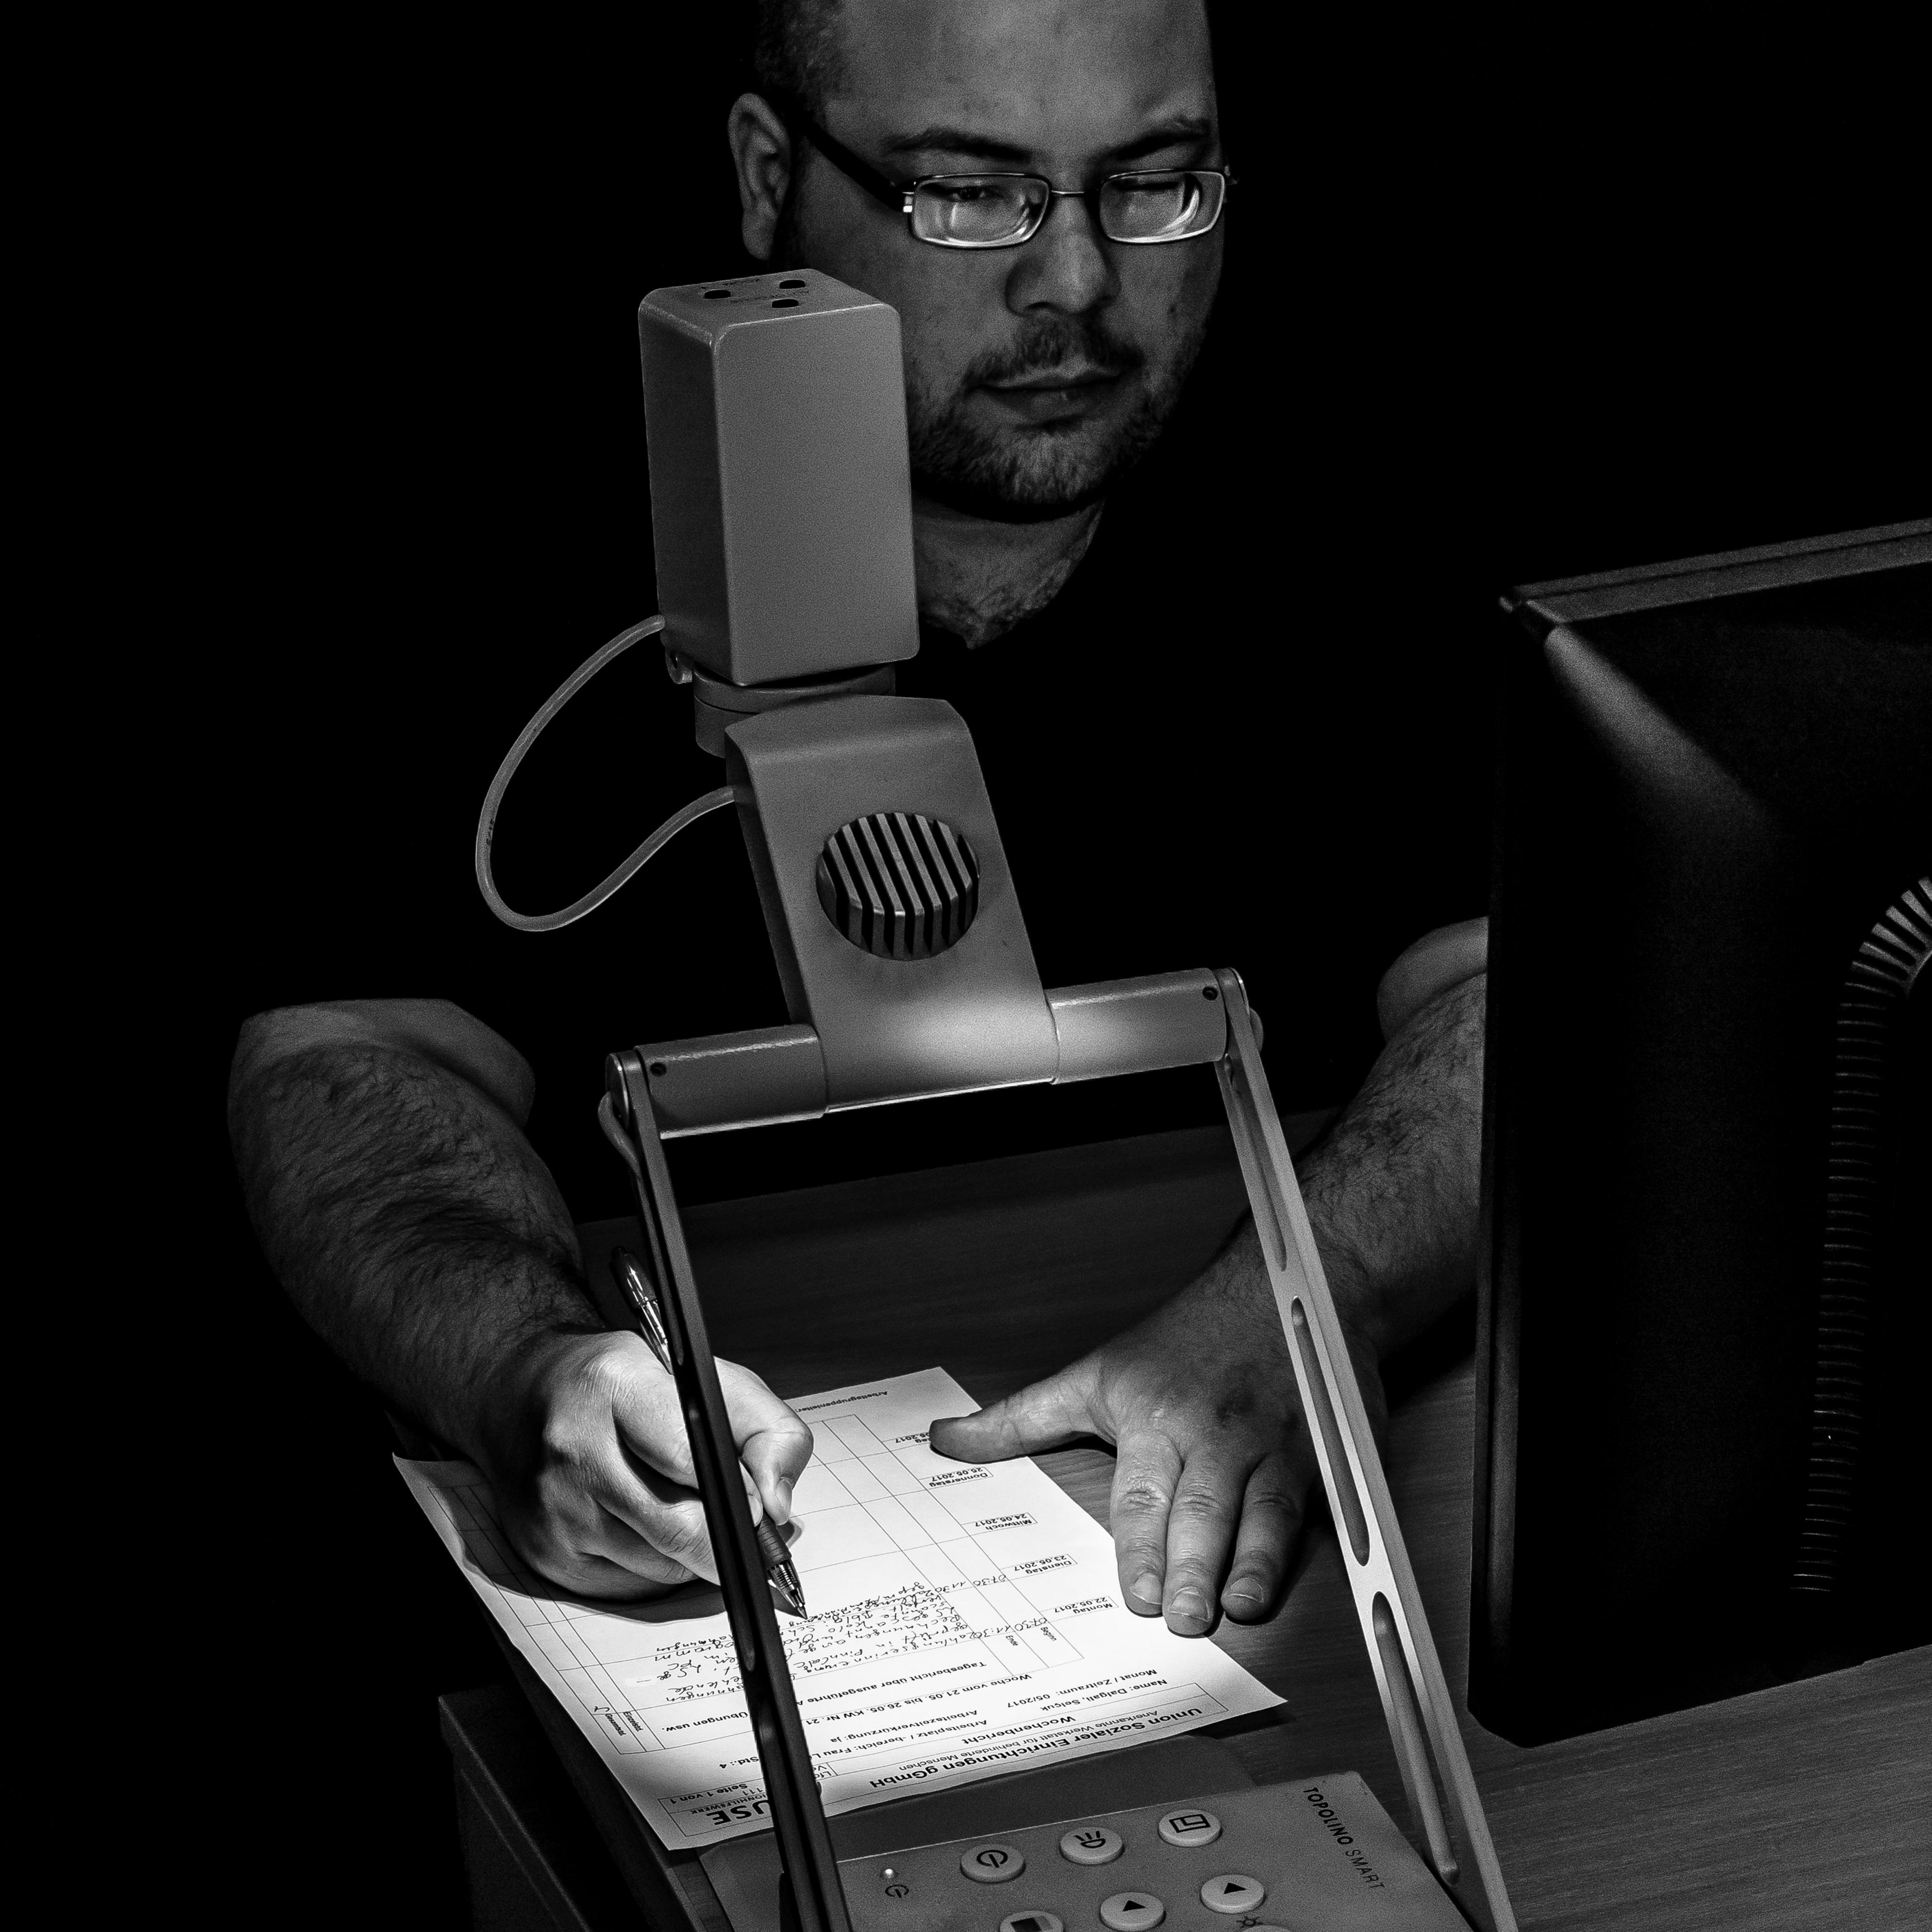 Ein Mann schreibt auf einen Zettel unter einem Lesegerät mit Lampe.